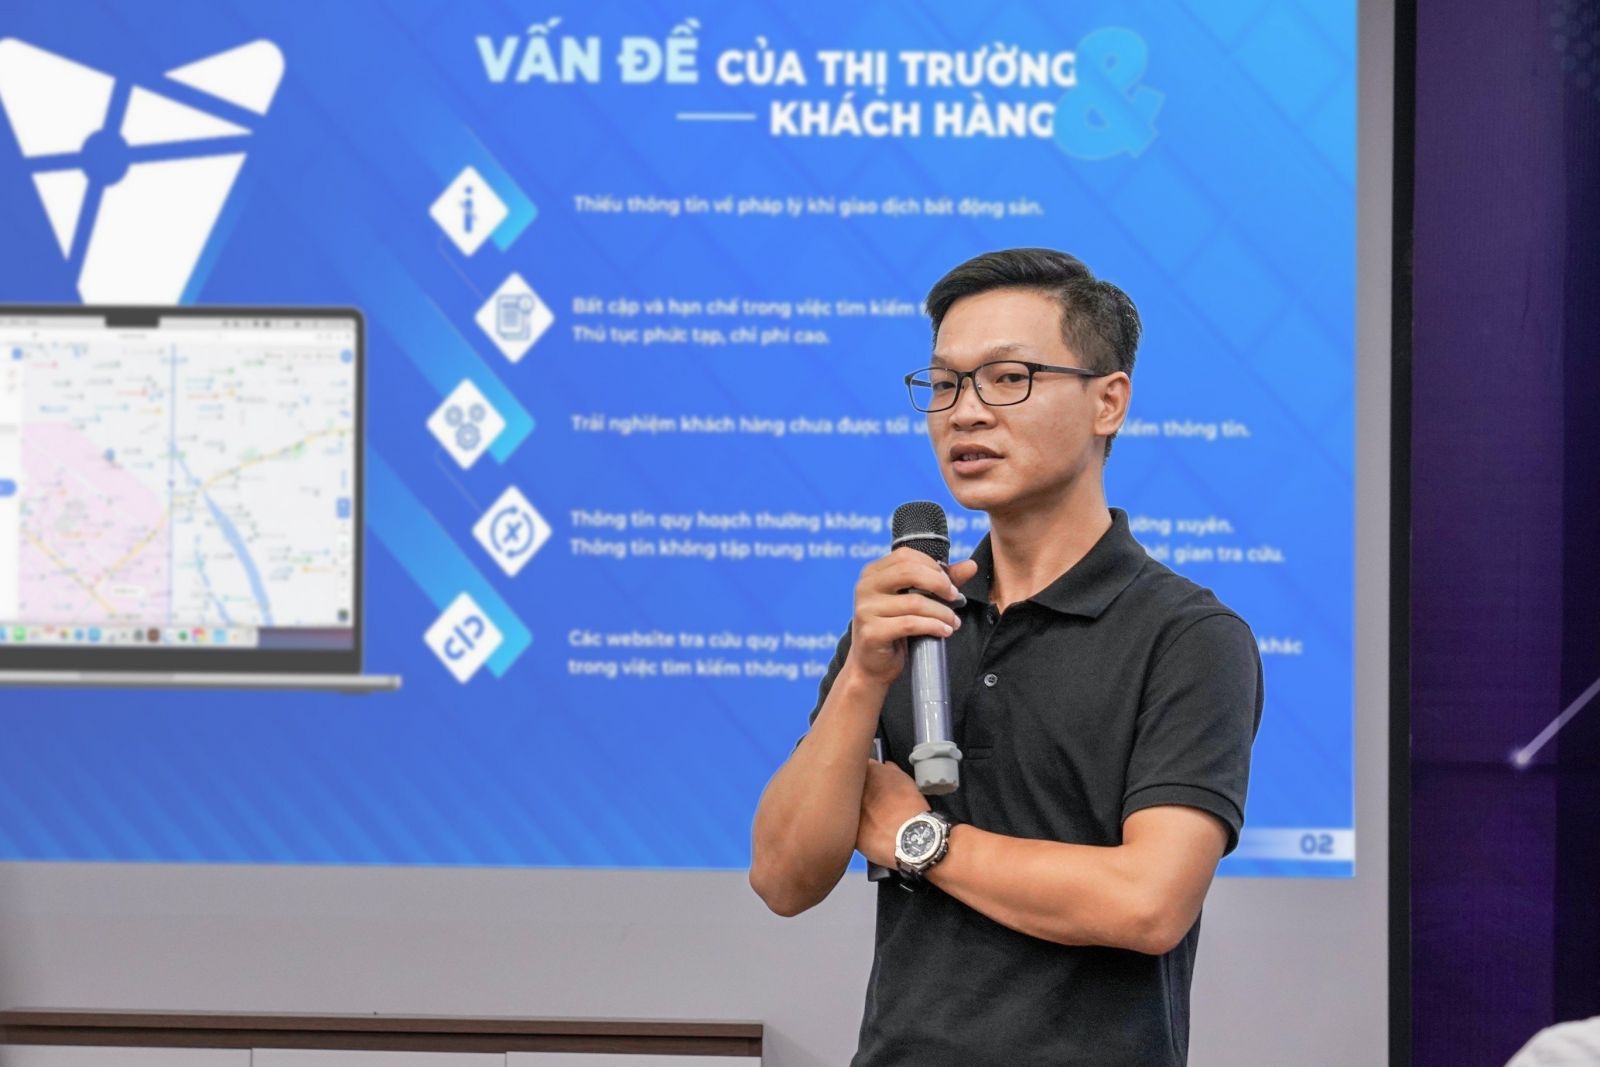 Ông Nguyễn Duy Sơn - Giám đốc Trung tâm Phát triển Hệ thống Thông tin địa lý của Meey Land chia sẻ kỳ vọng về sản phẩm Meey Map trong tương lai.